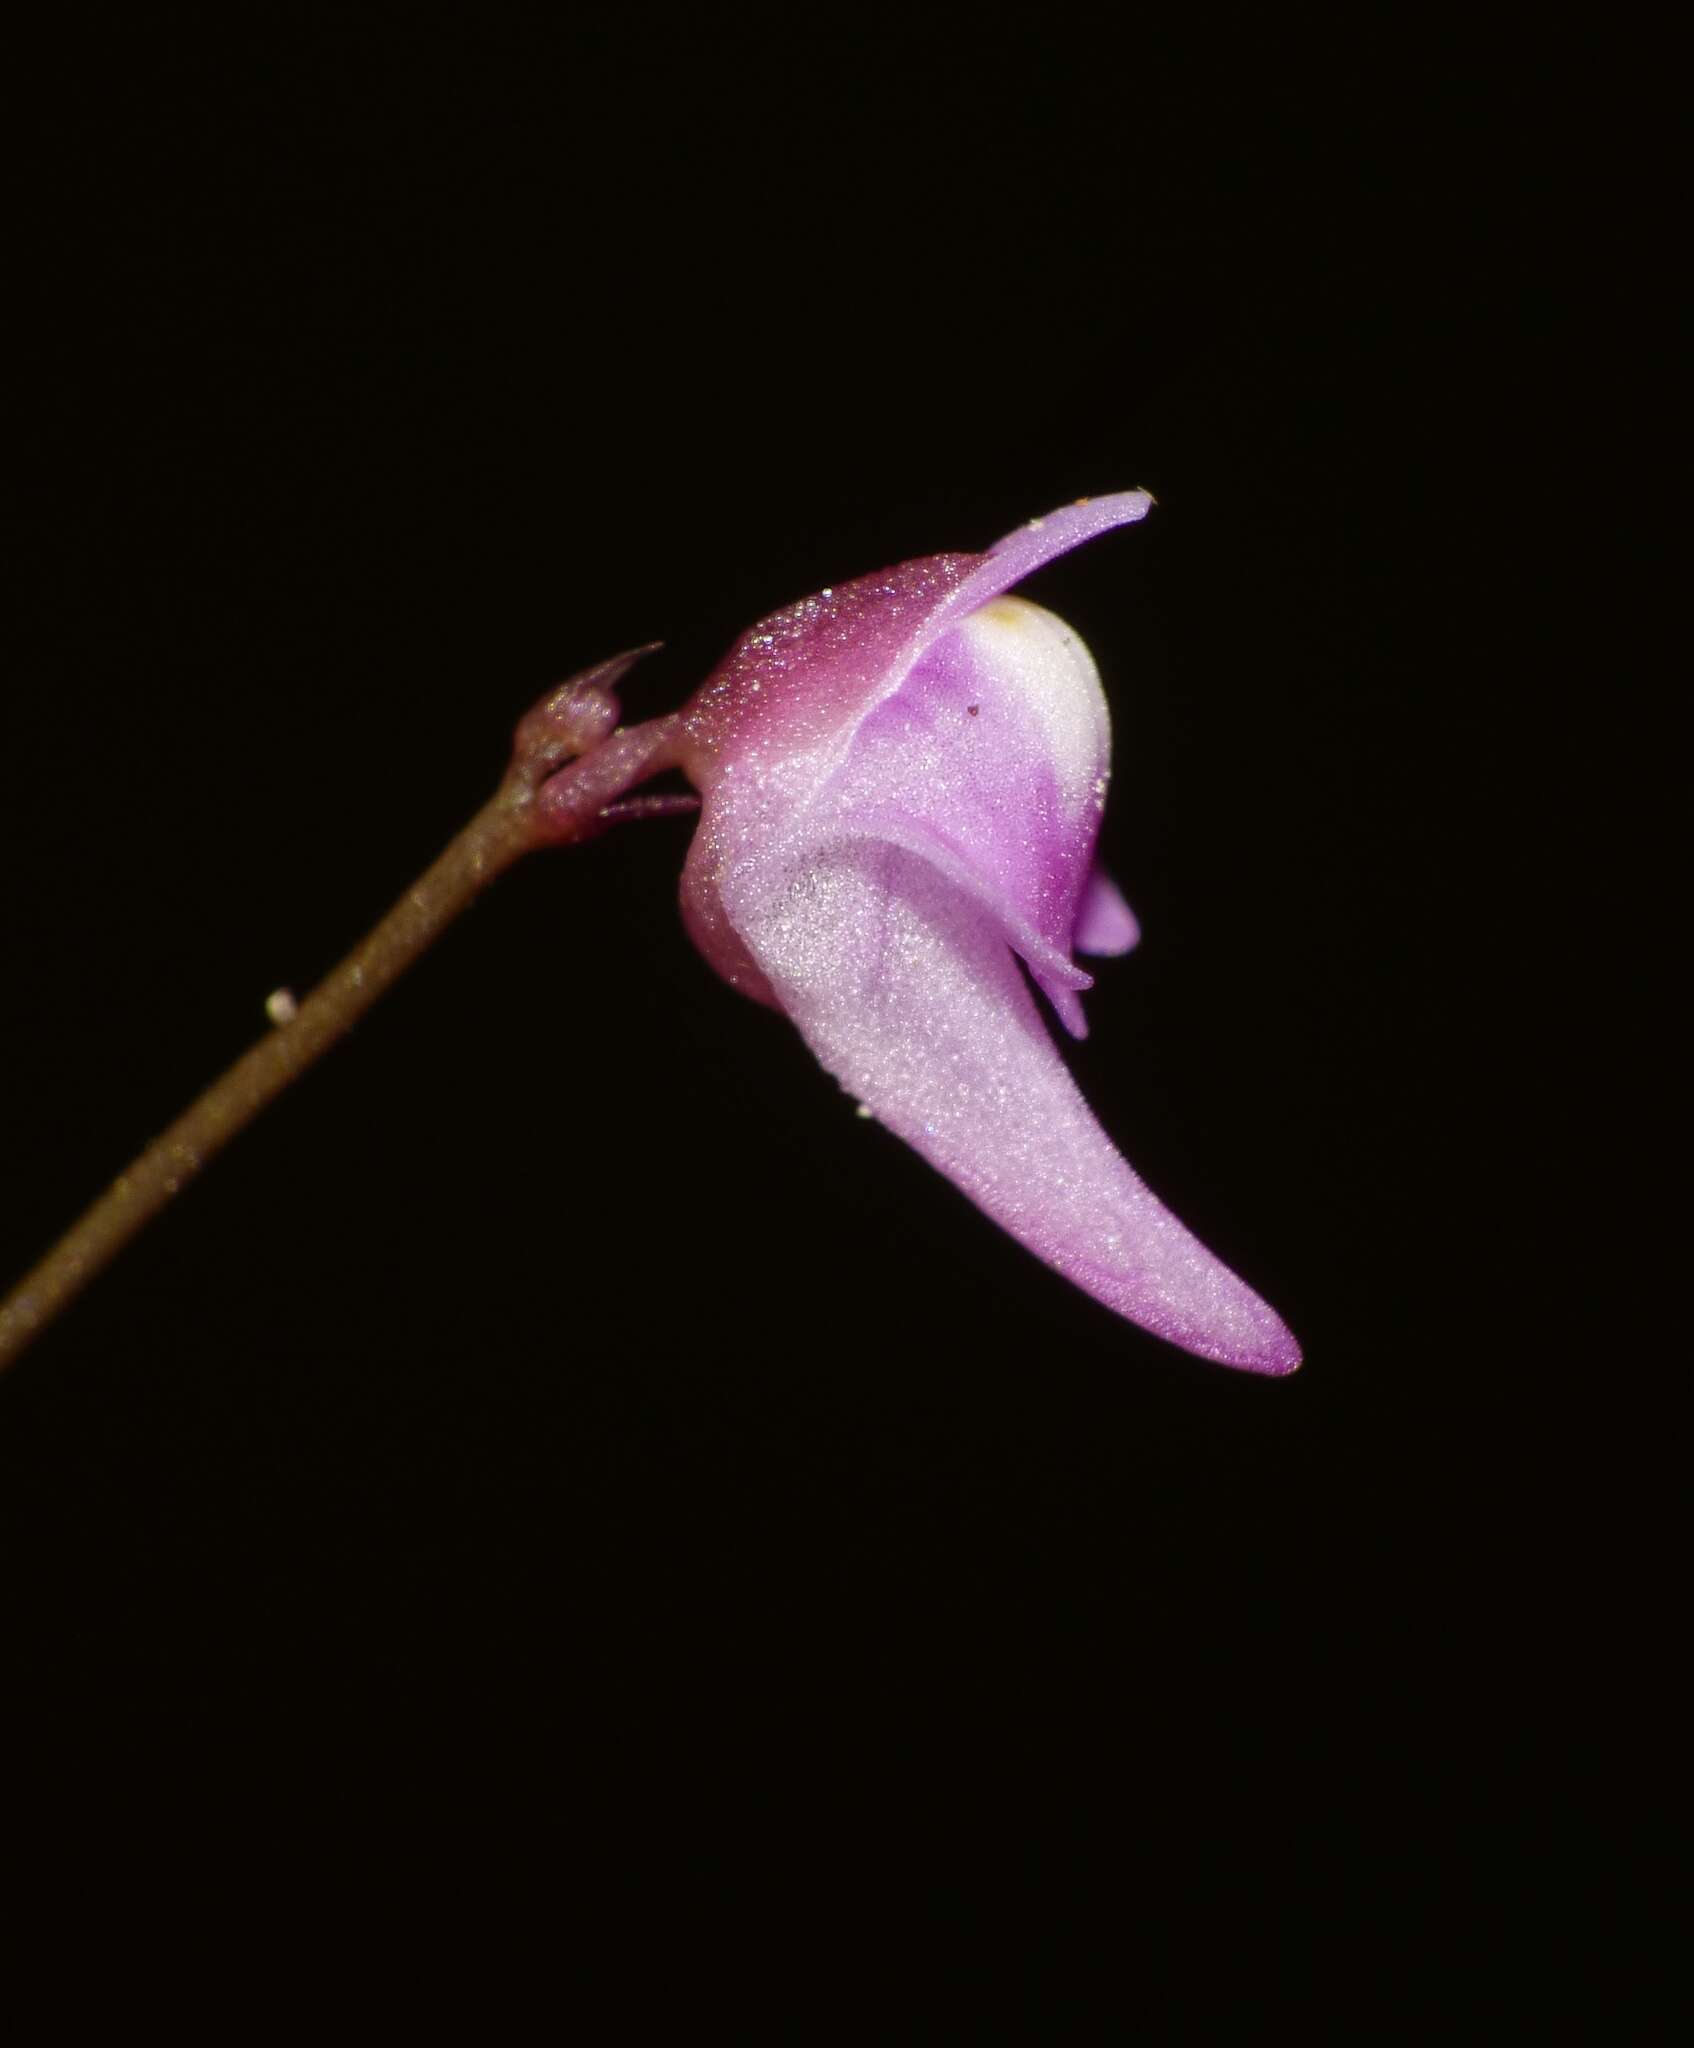 Image of Utricularia minutissima Vahl